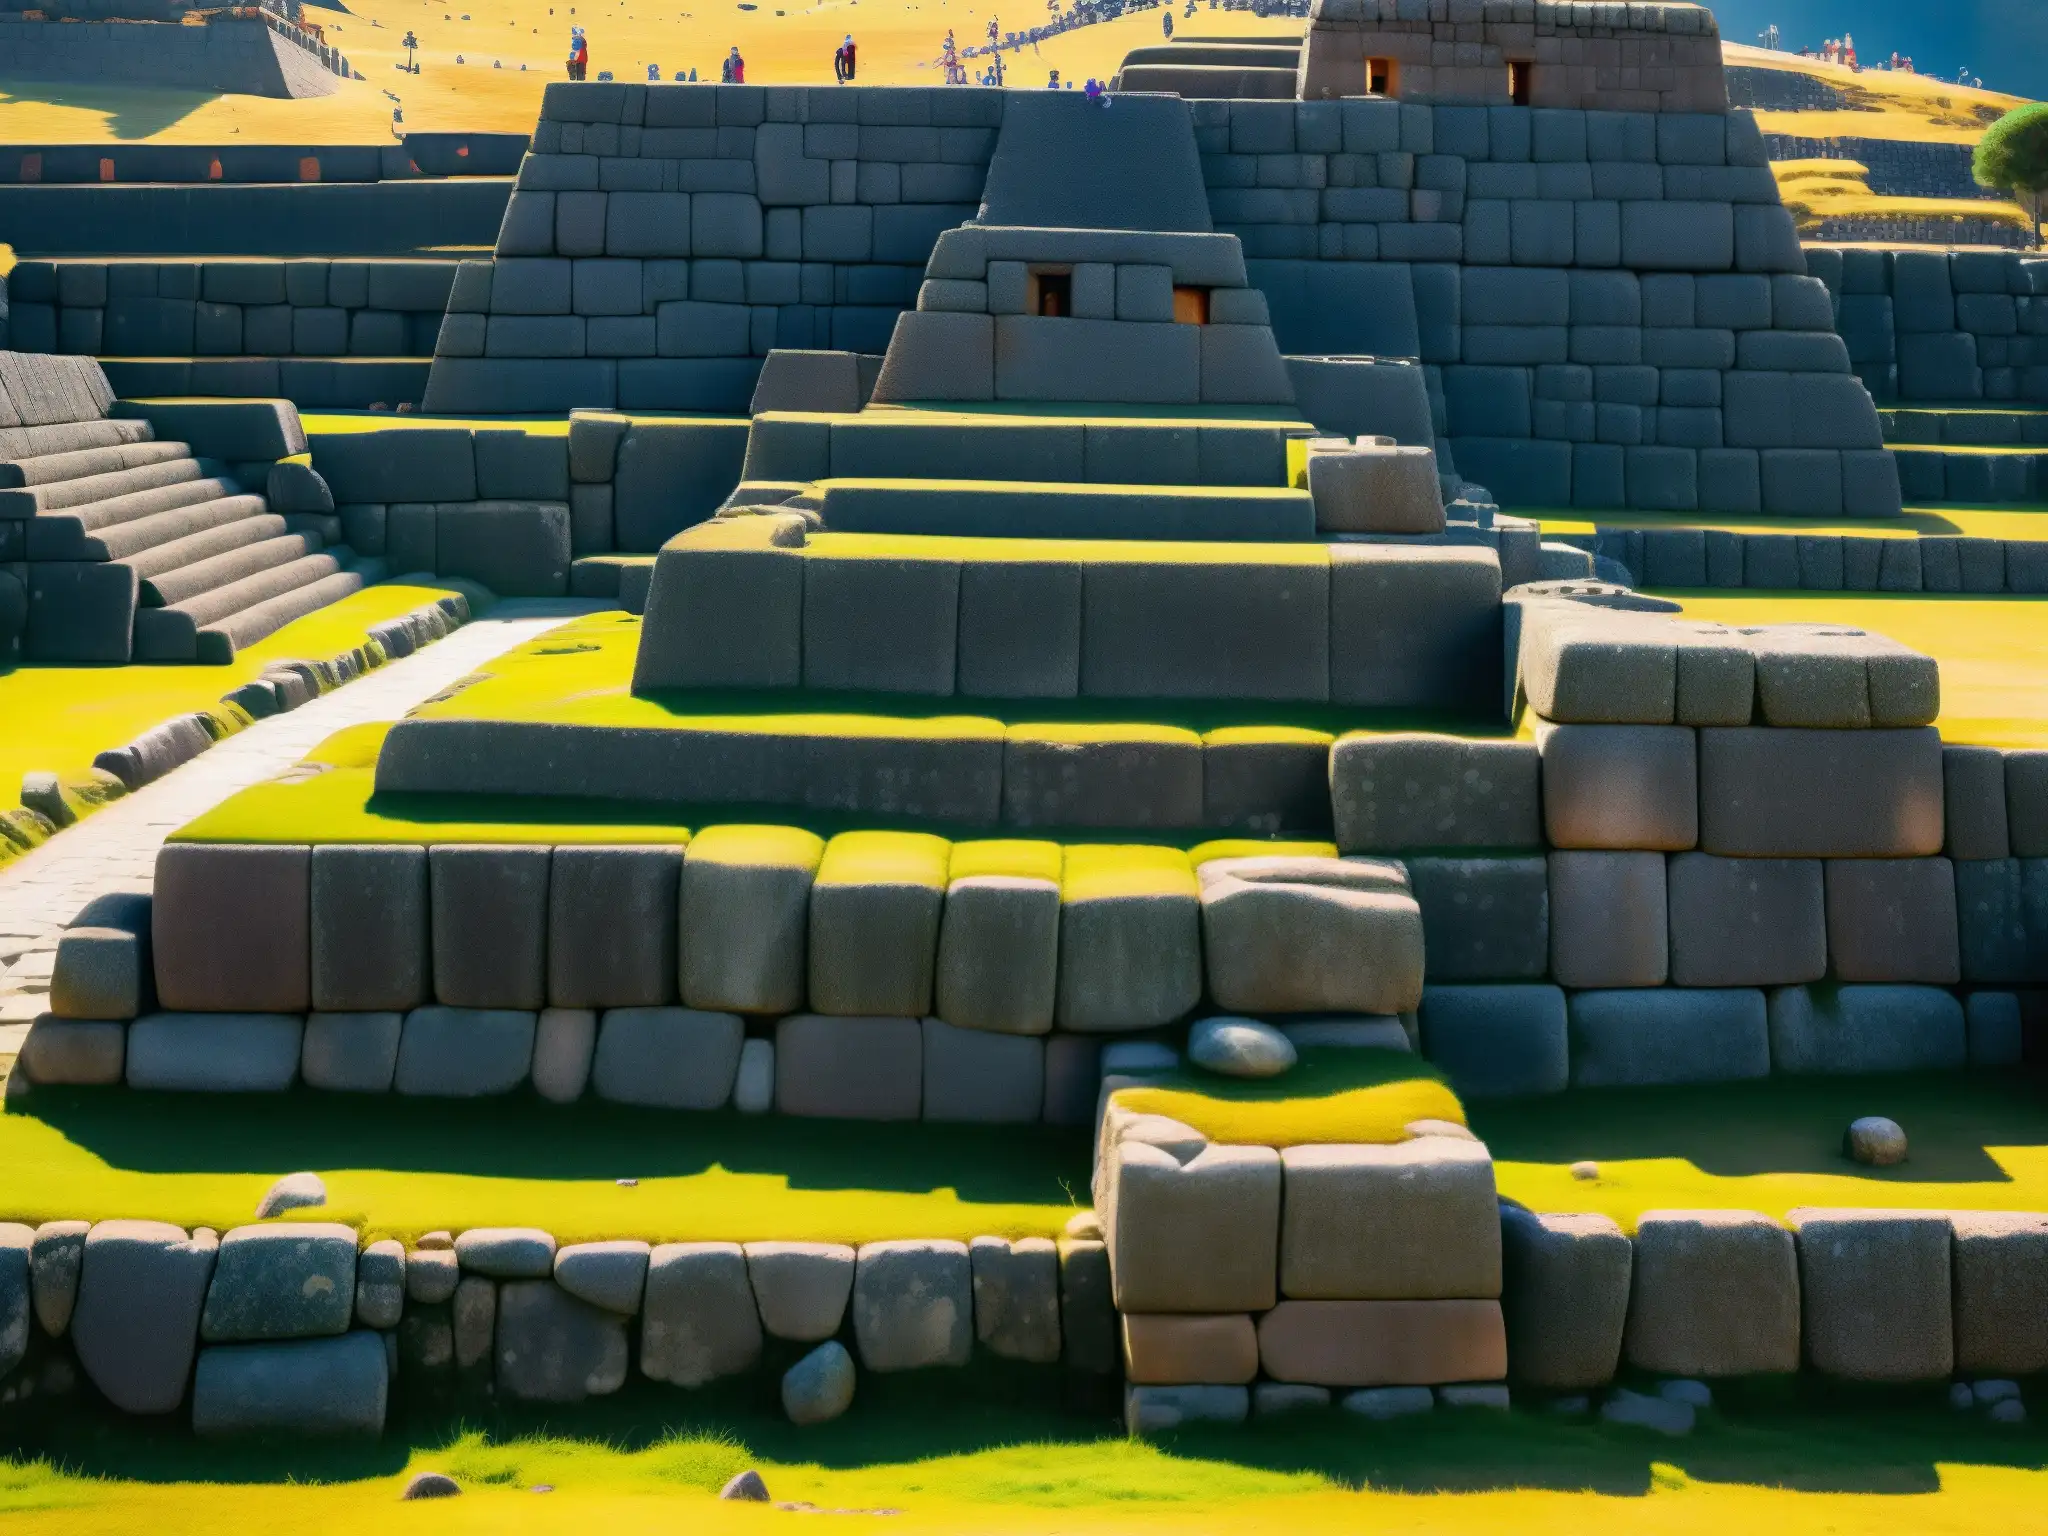 Detalle impresionante de Sacsayhuamán, mostrando la precisión y escala colosal de los restos incas